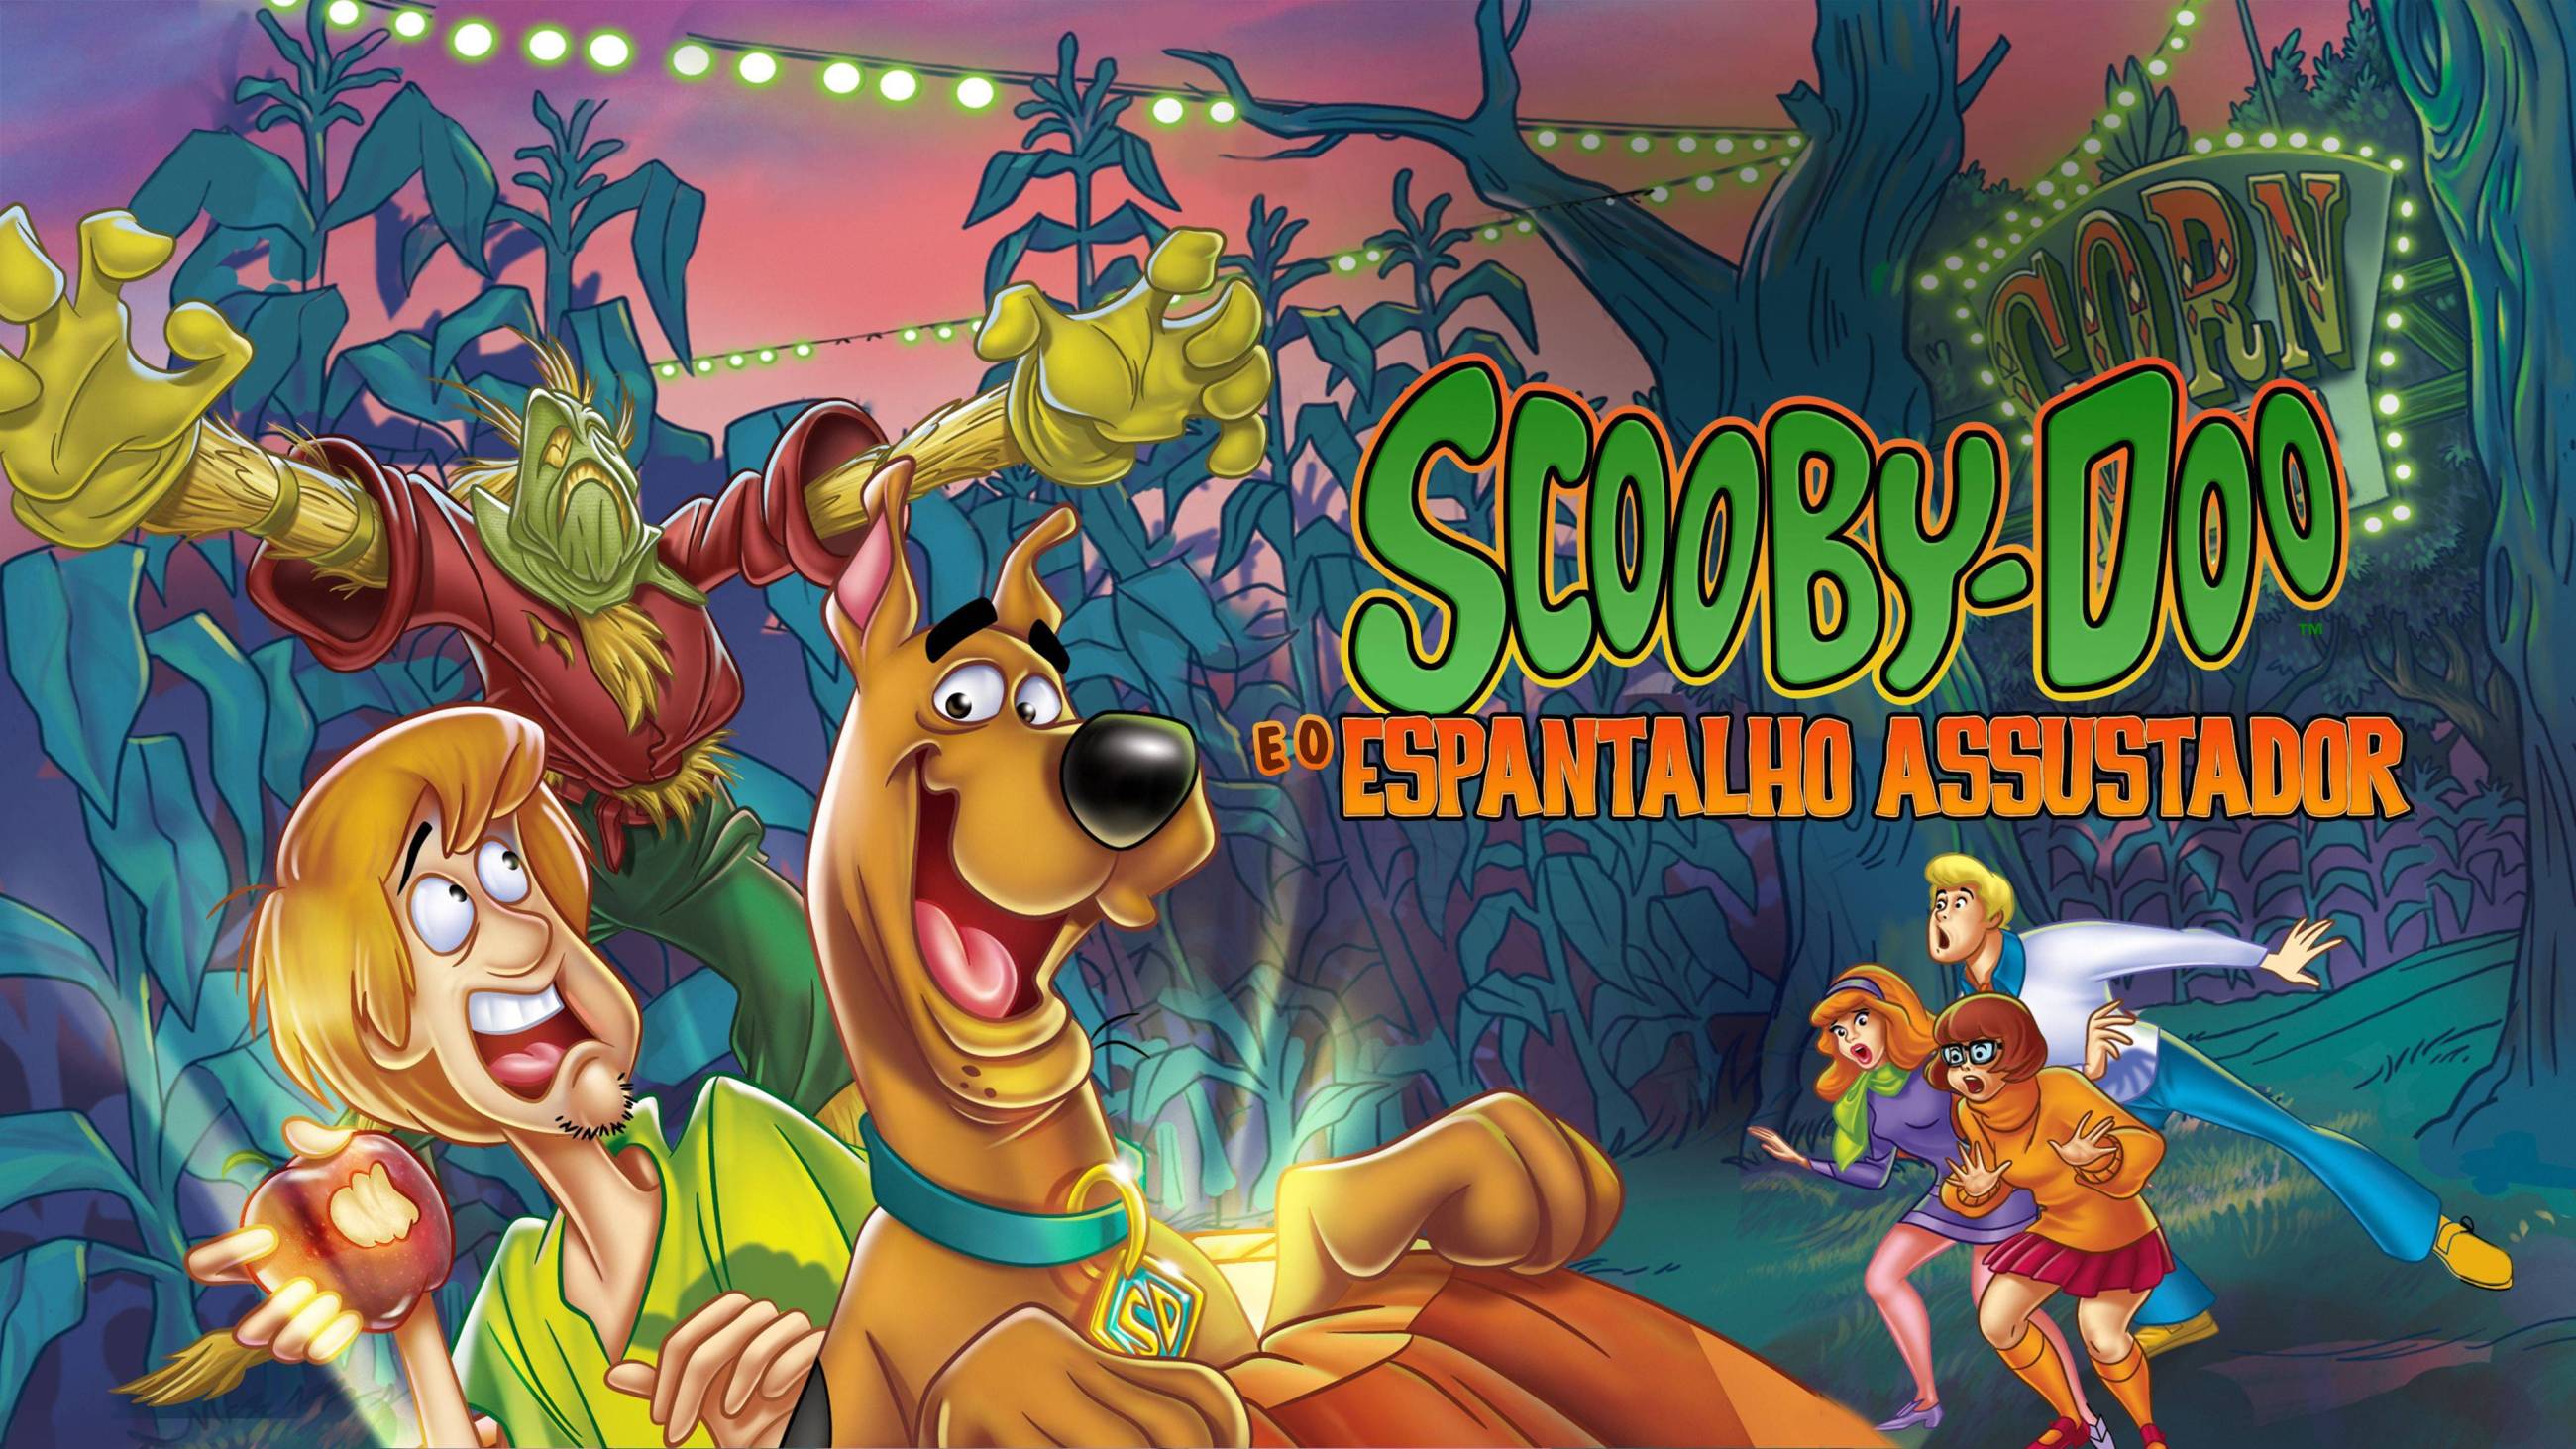 Cubierta de Scooby-Doo y el espantapájaros tenebroso